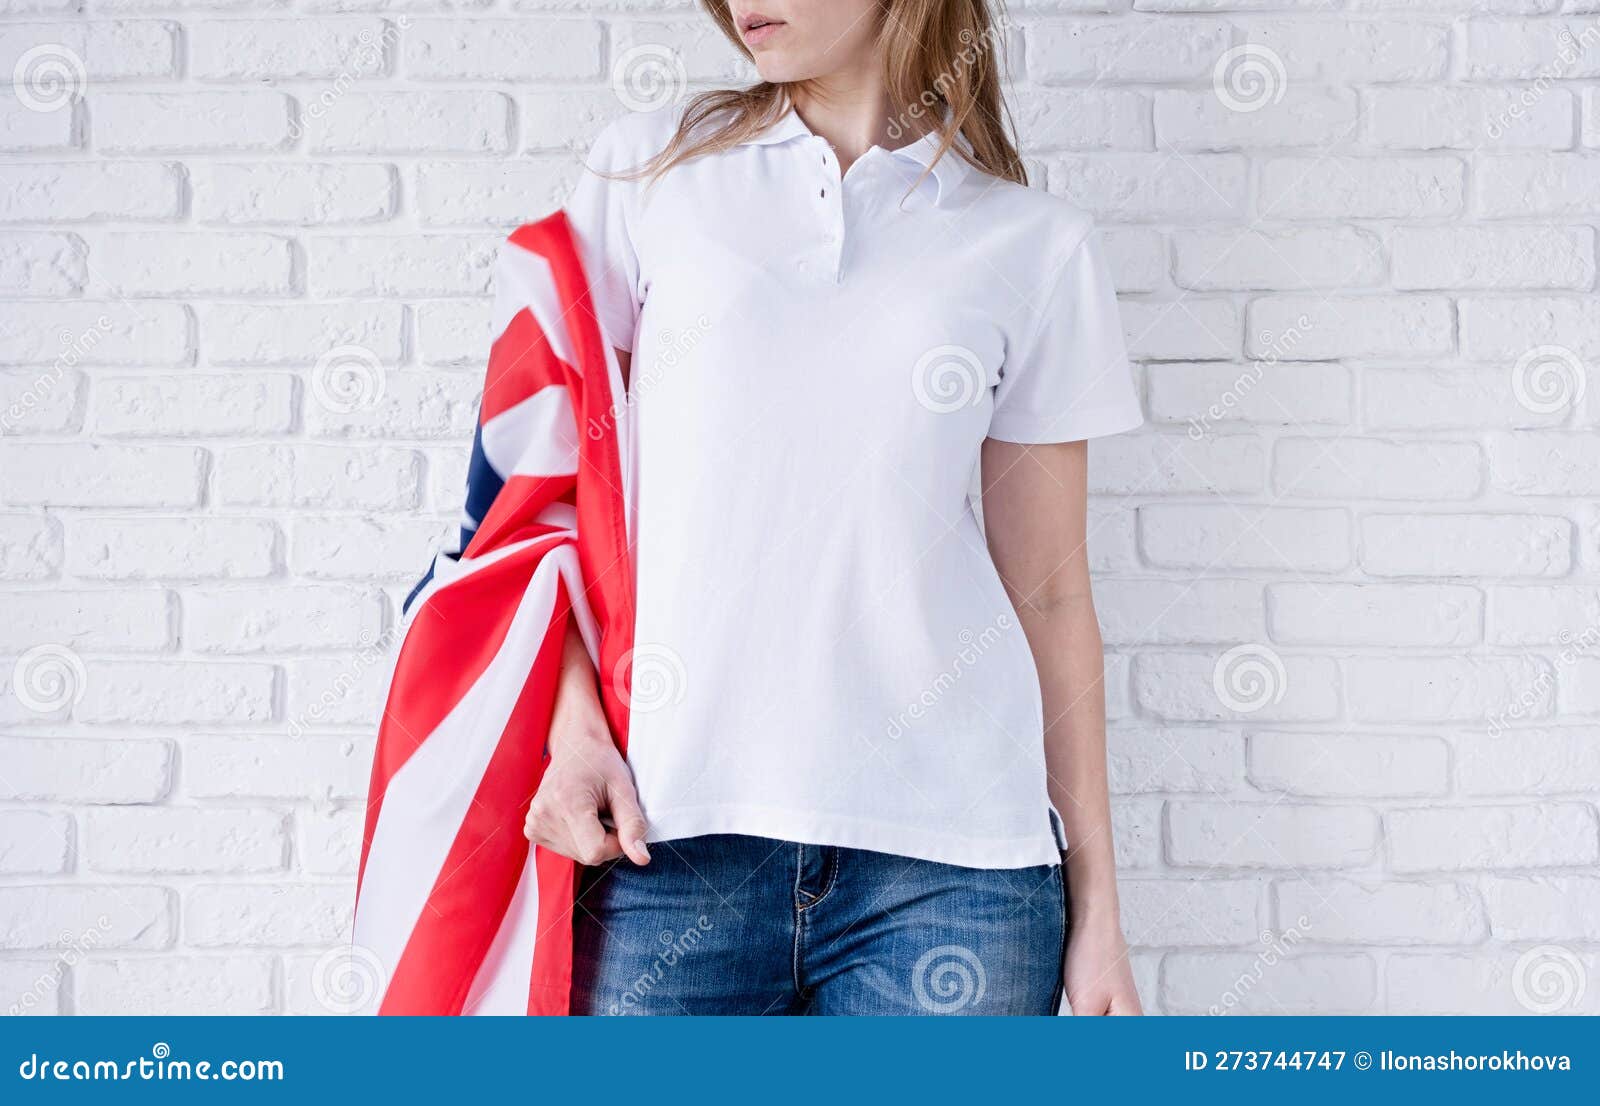 Camisa Blanca De Polo La Mujer Sobre El Diseño De La Imitación Del Fondo De La Bandera De Los Estados Unidos de archivo - Imagen de interior, celebre: 273744747